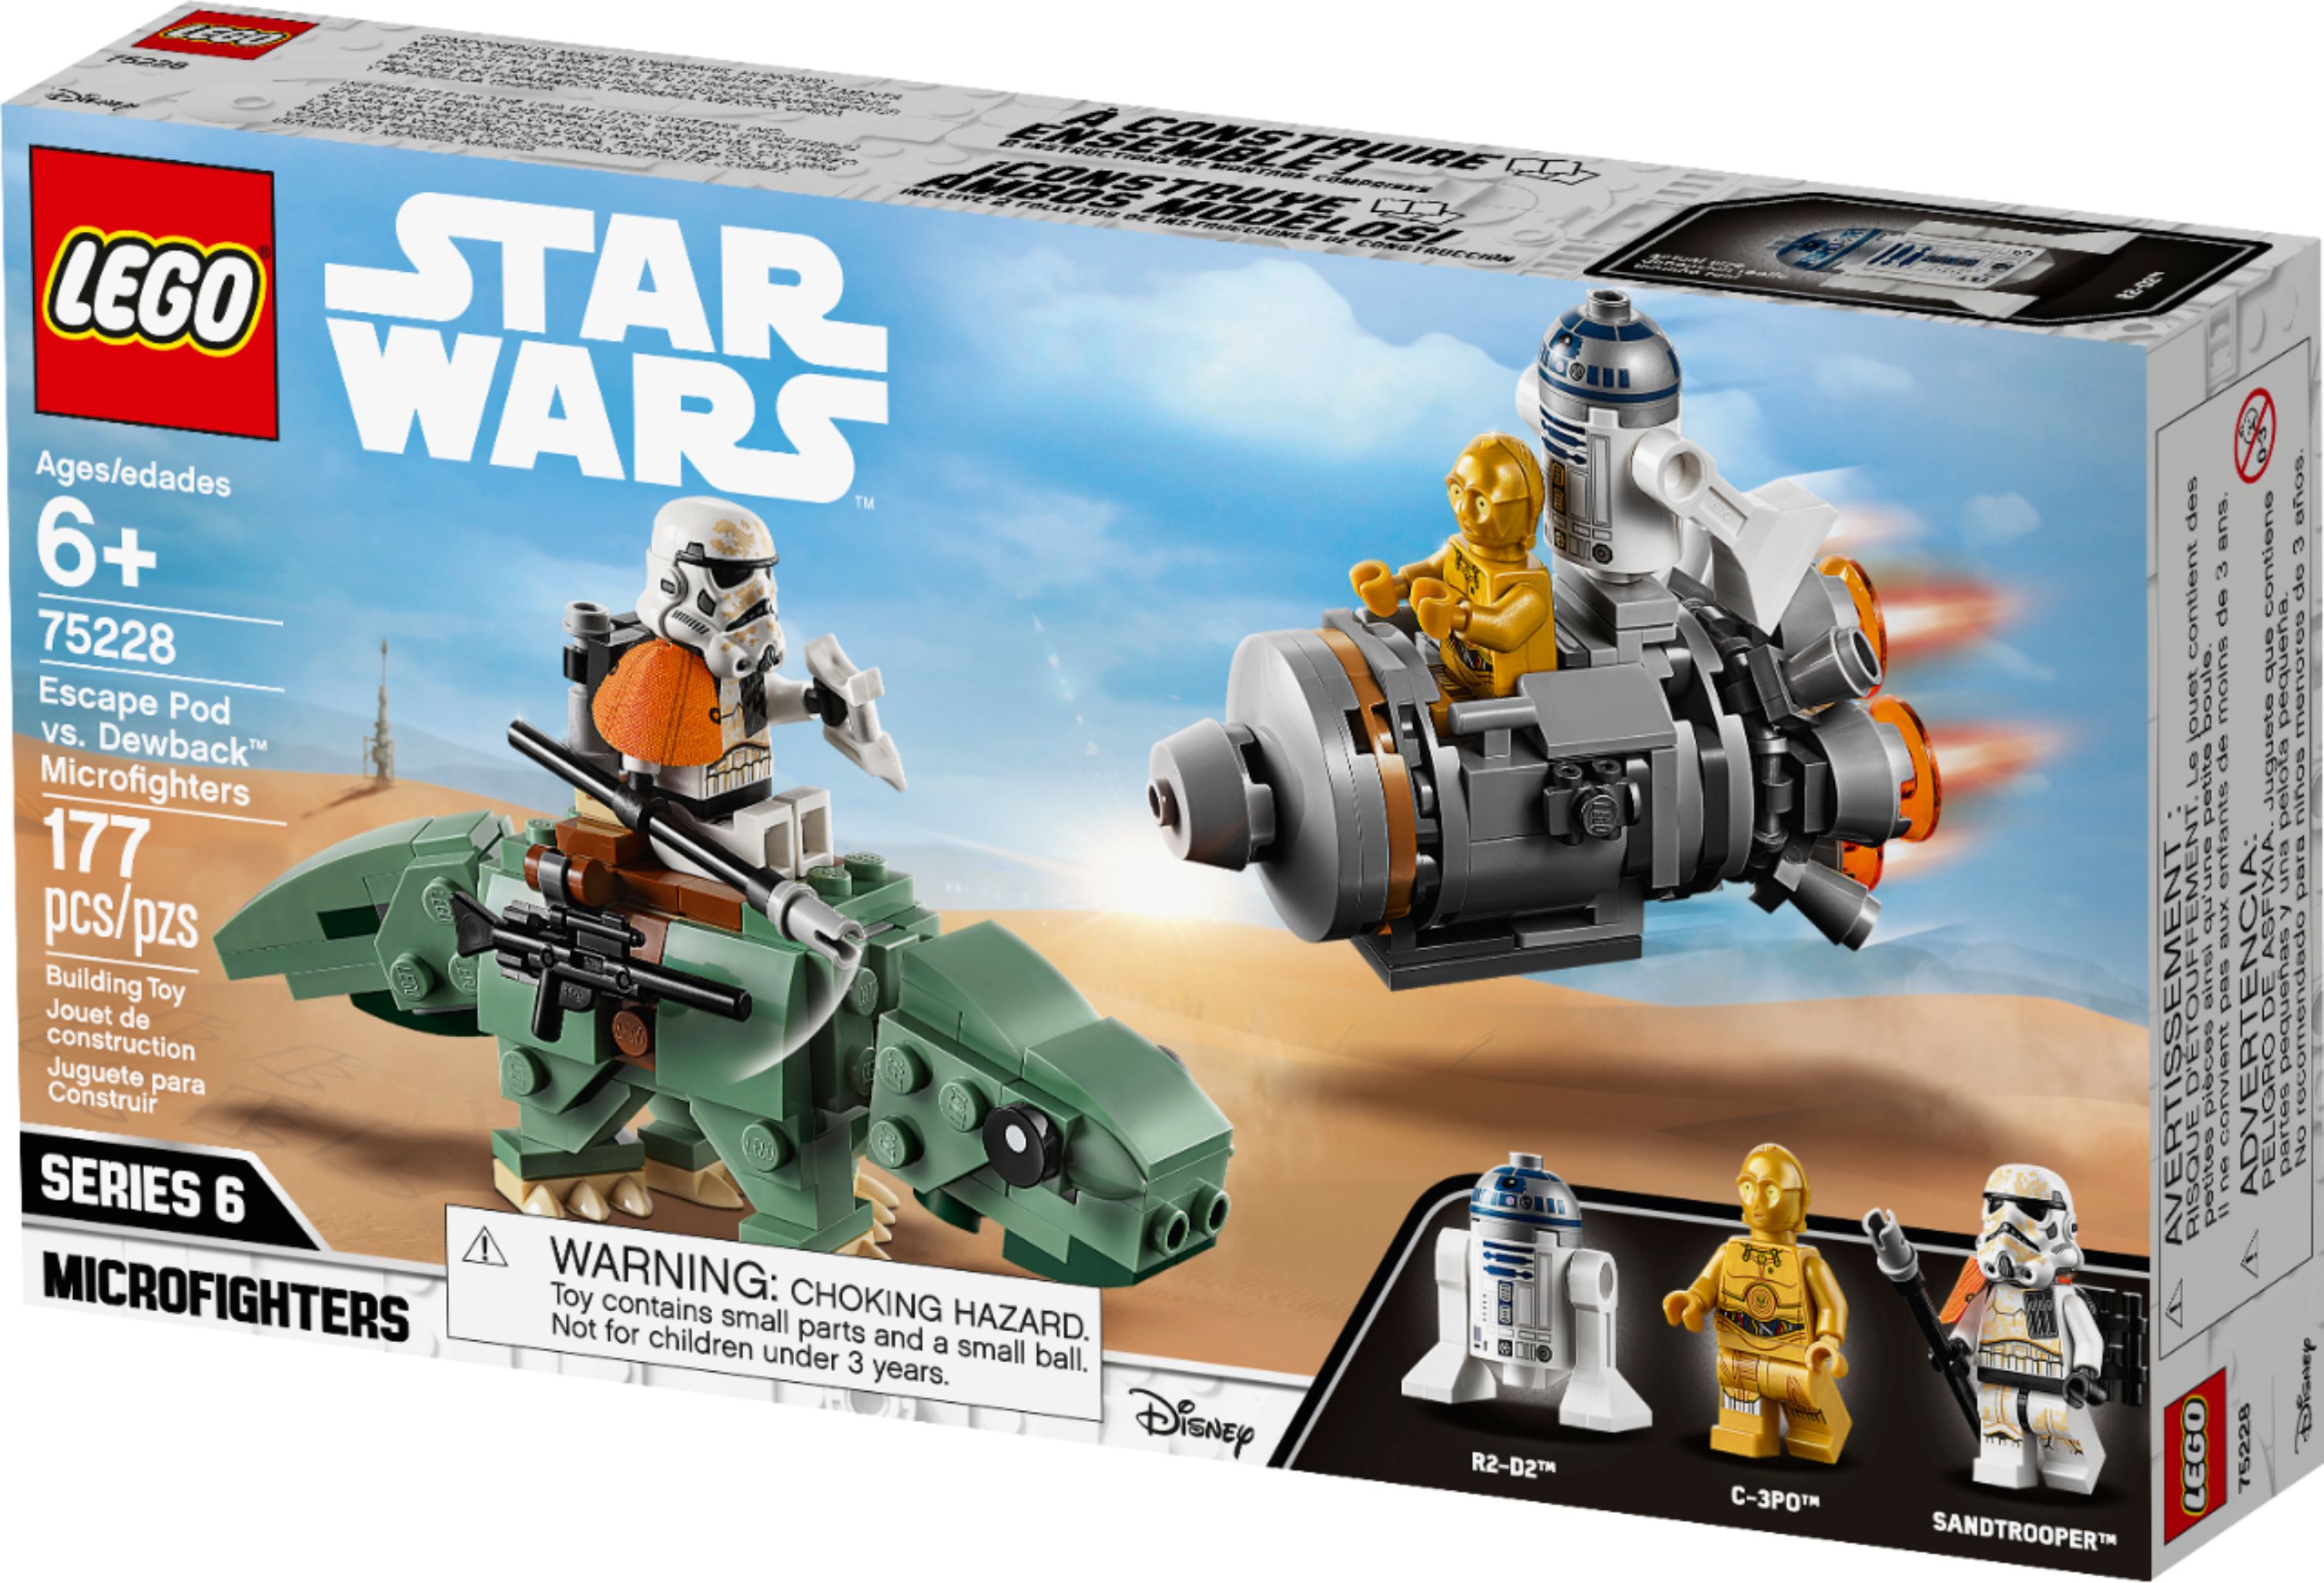 New in Sealed Box Star Wars LEGO #75228 Escape Pod Vs Dewback Microfighters 